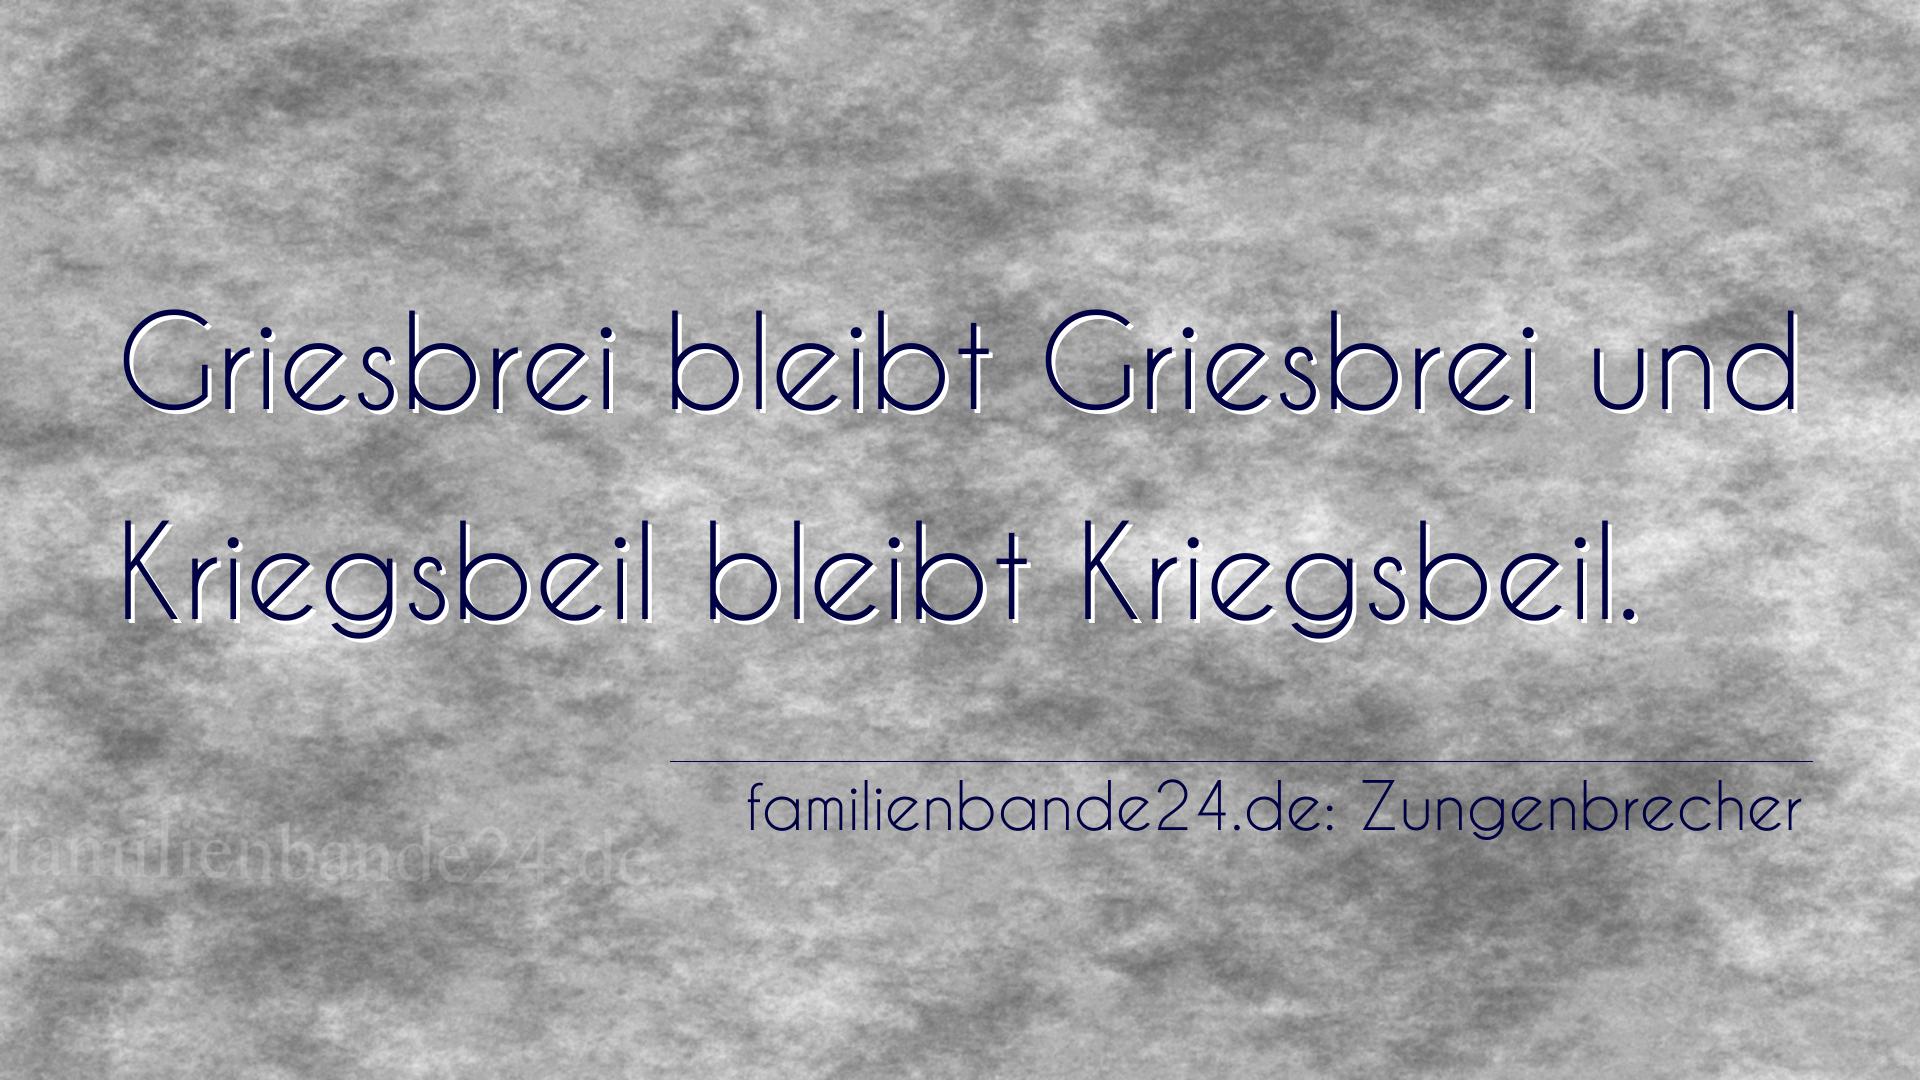 Zungenbrecher Nummer 681: Griesbrei bleibt Griesbrei und Kriegsbeil bleibt Kriegsbeil.